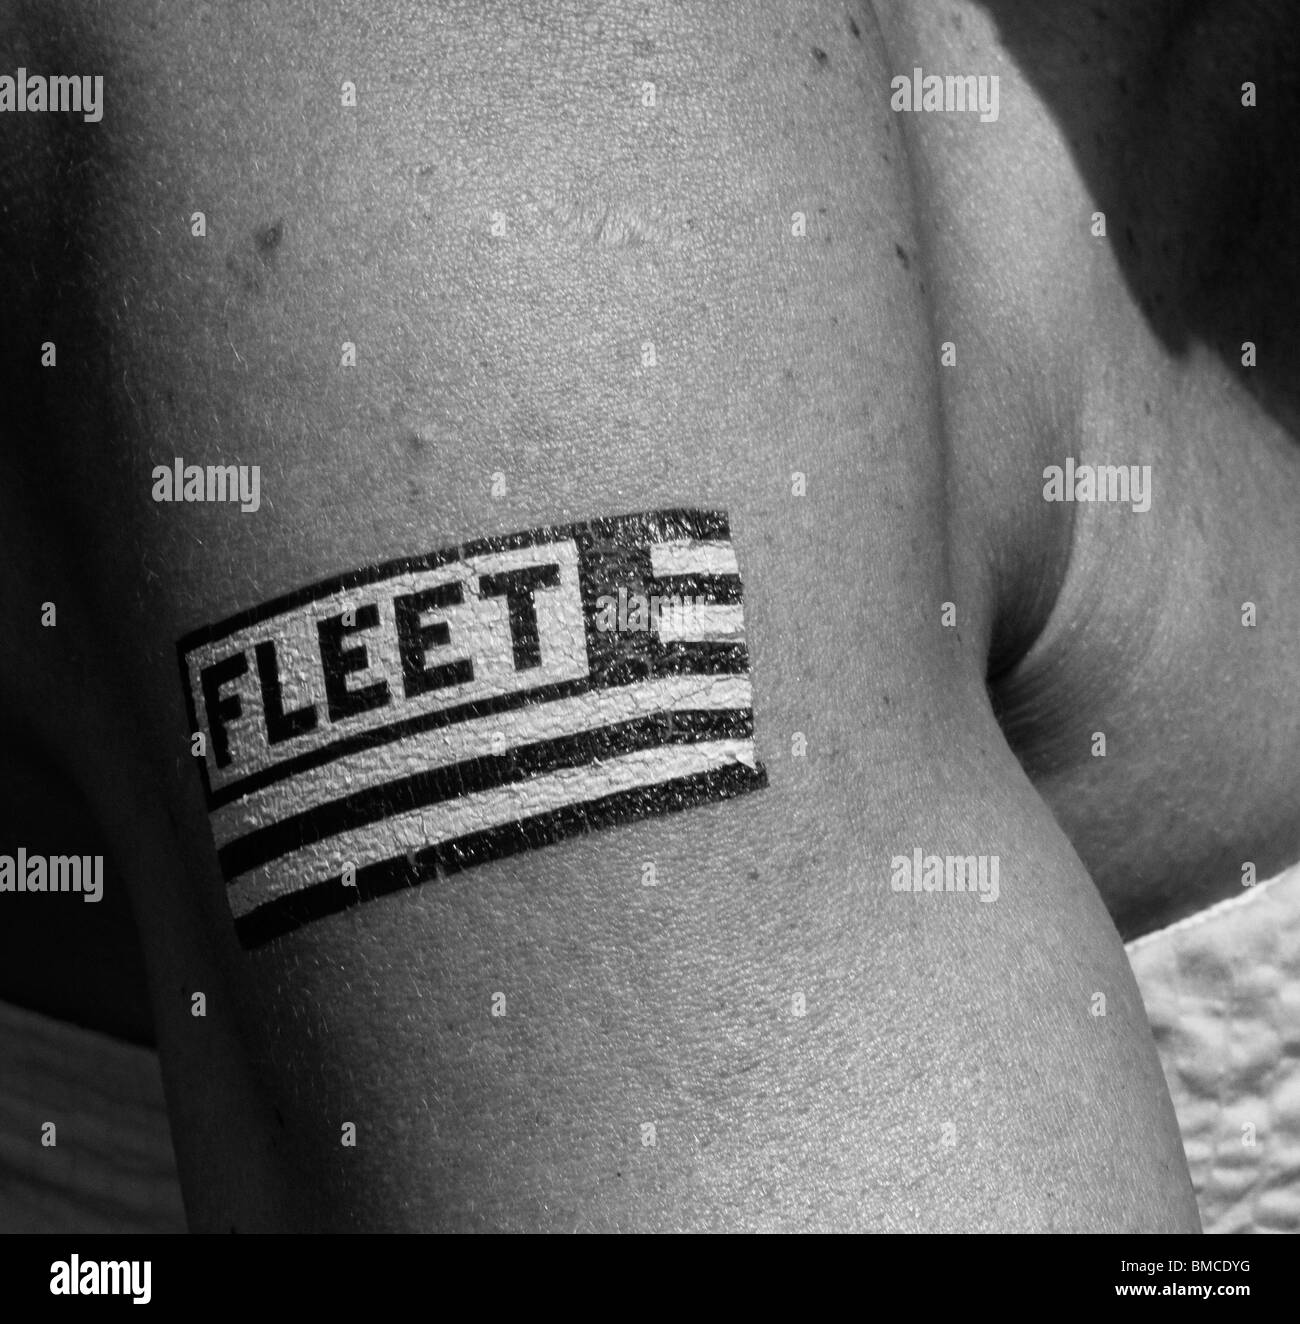 La Fleet Week femme porte la pâte sur le tatouage de la Fleet Week à New York, Manhattan USA Banque D'Images